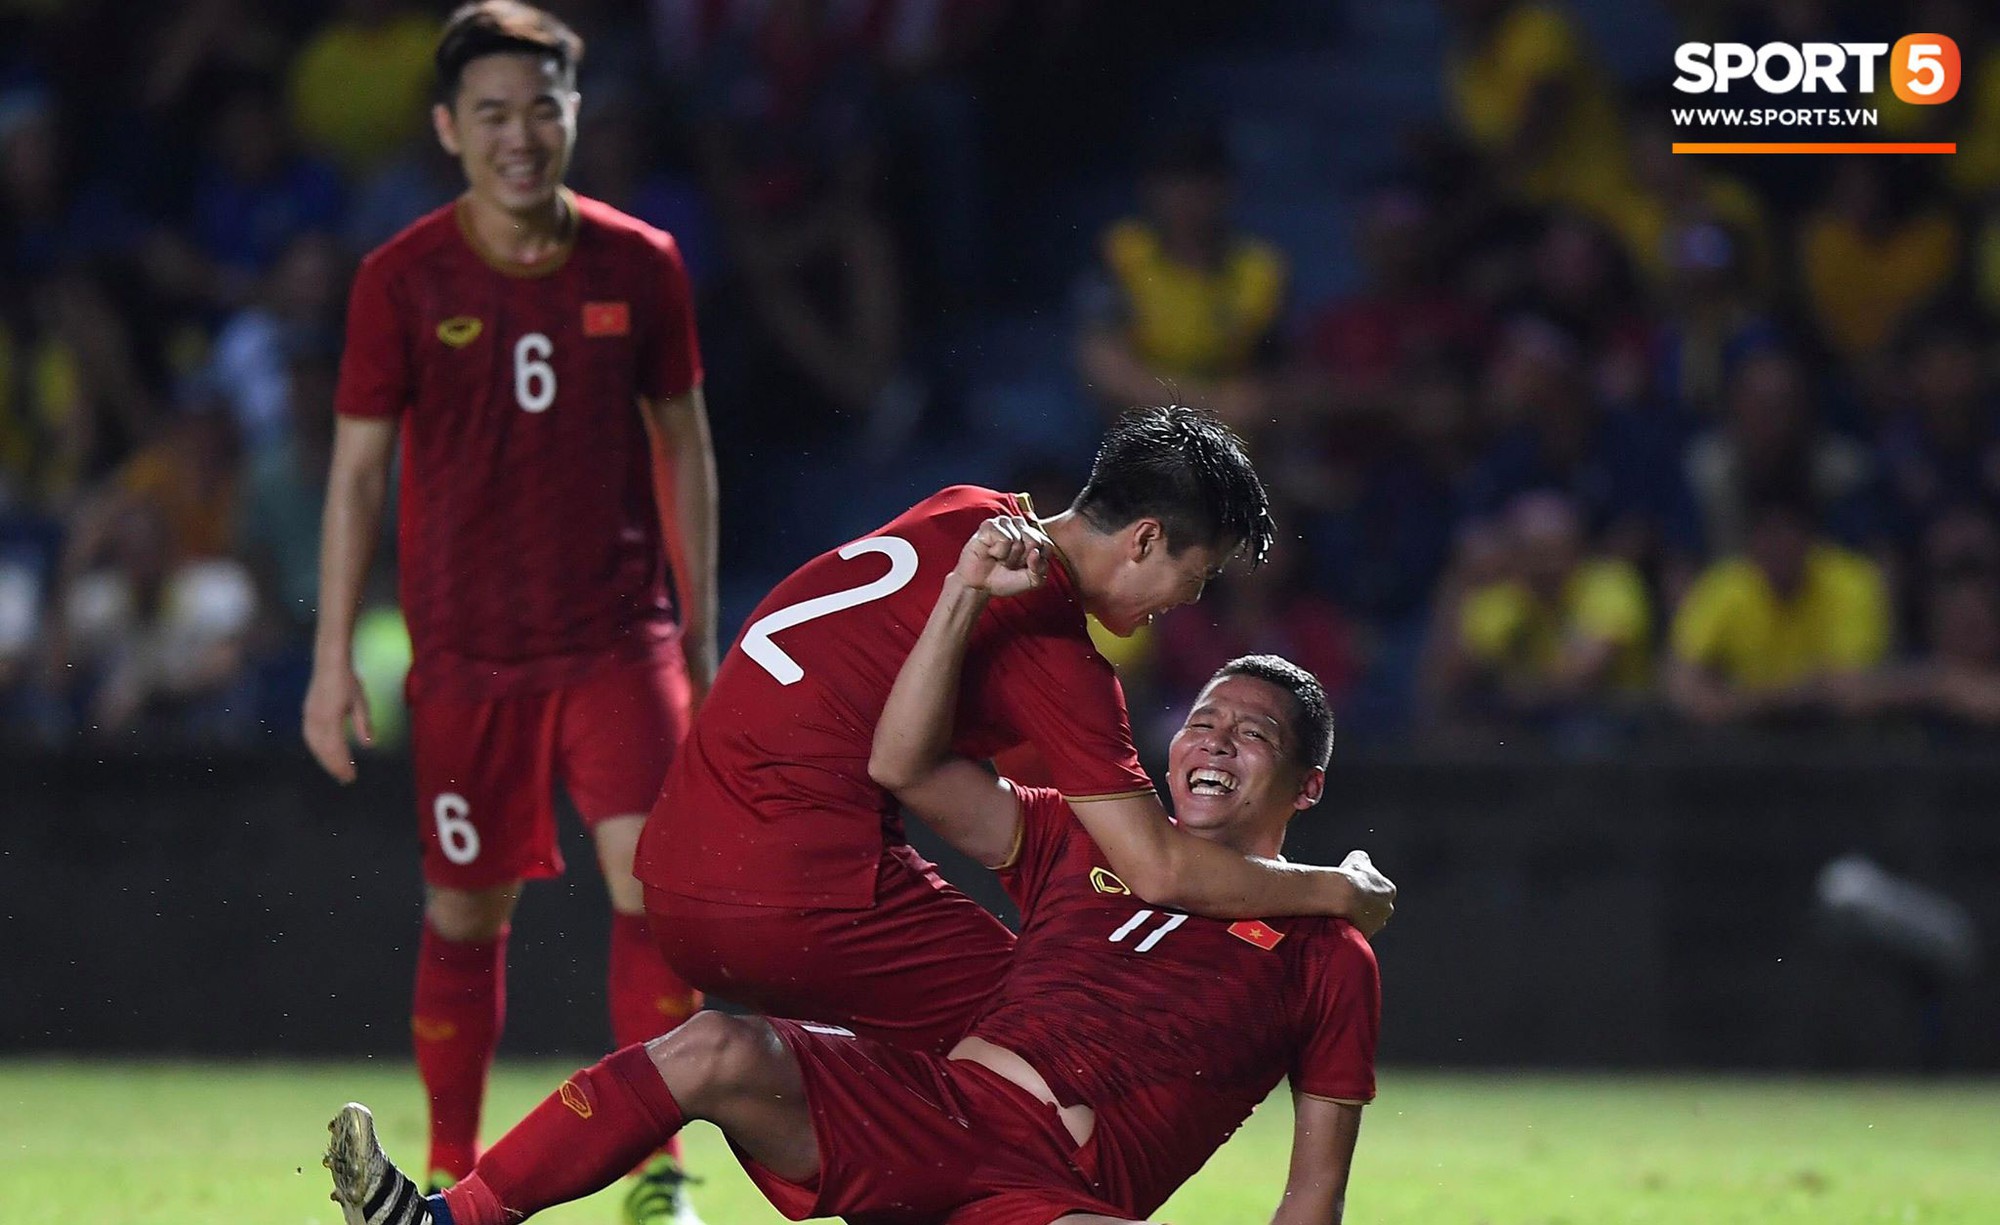 Đội nhà vừa thua mất mặt, báo Thái vẫn tự tin tuyên bố: Gặp Việt Nam tại vòng loại World Cup là dễ chịu nhất - Ảnh 2.